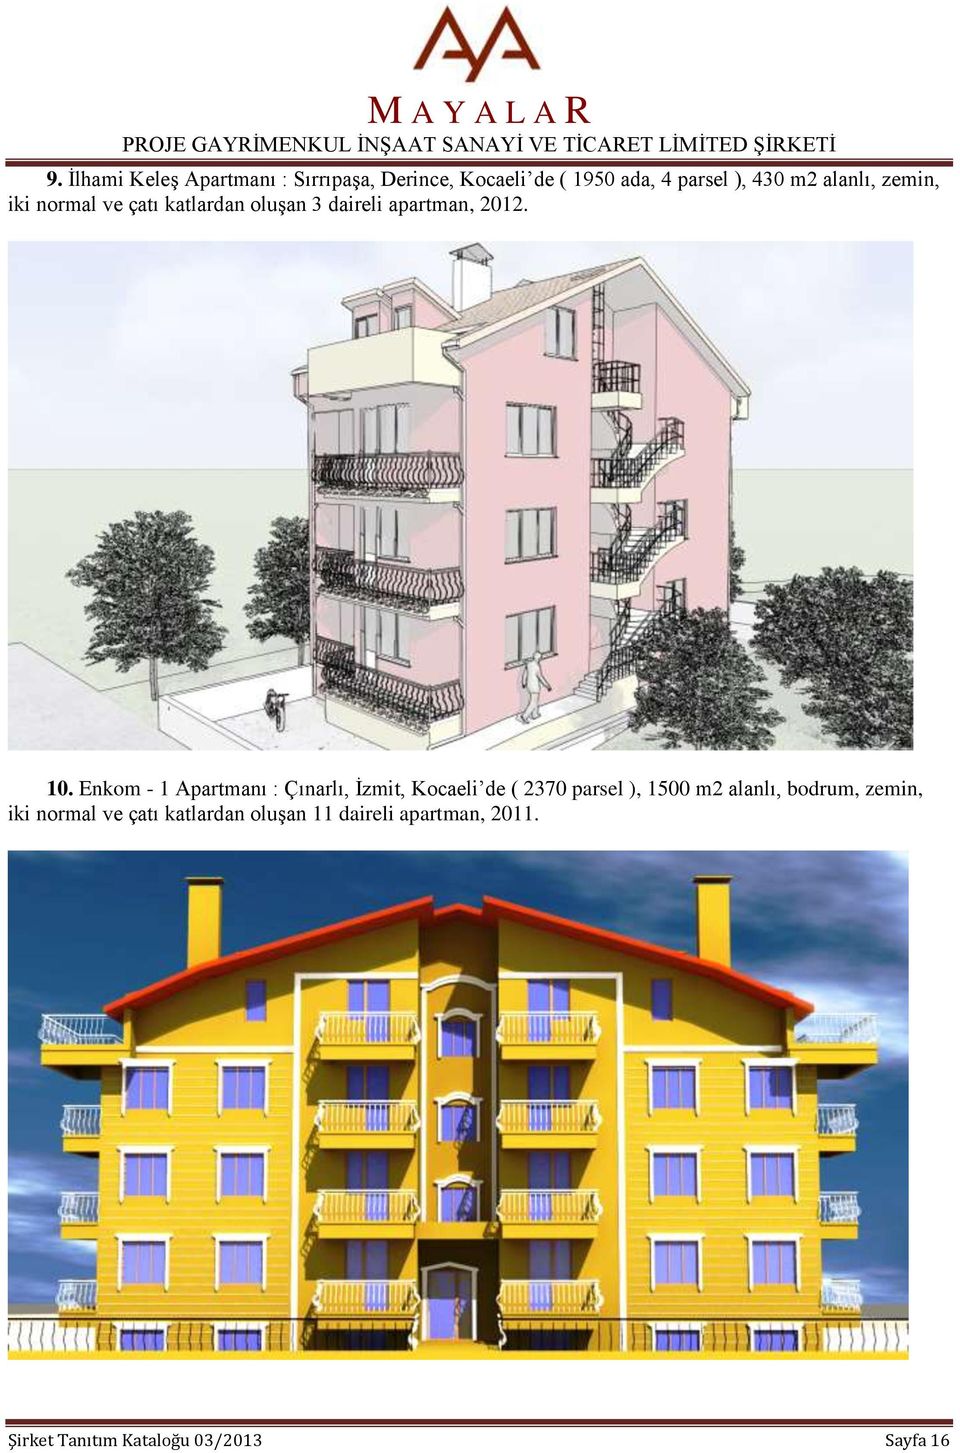 Enkom - 1 Apartmanı : Çınarlı, İzmit, Kocaeli de ( 2370 parsel ), 1500 m2 alanlı, bodrum,